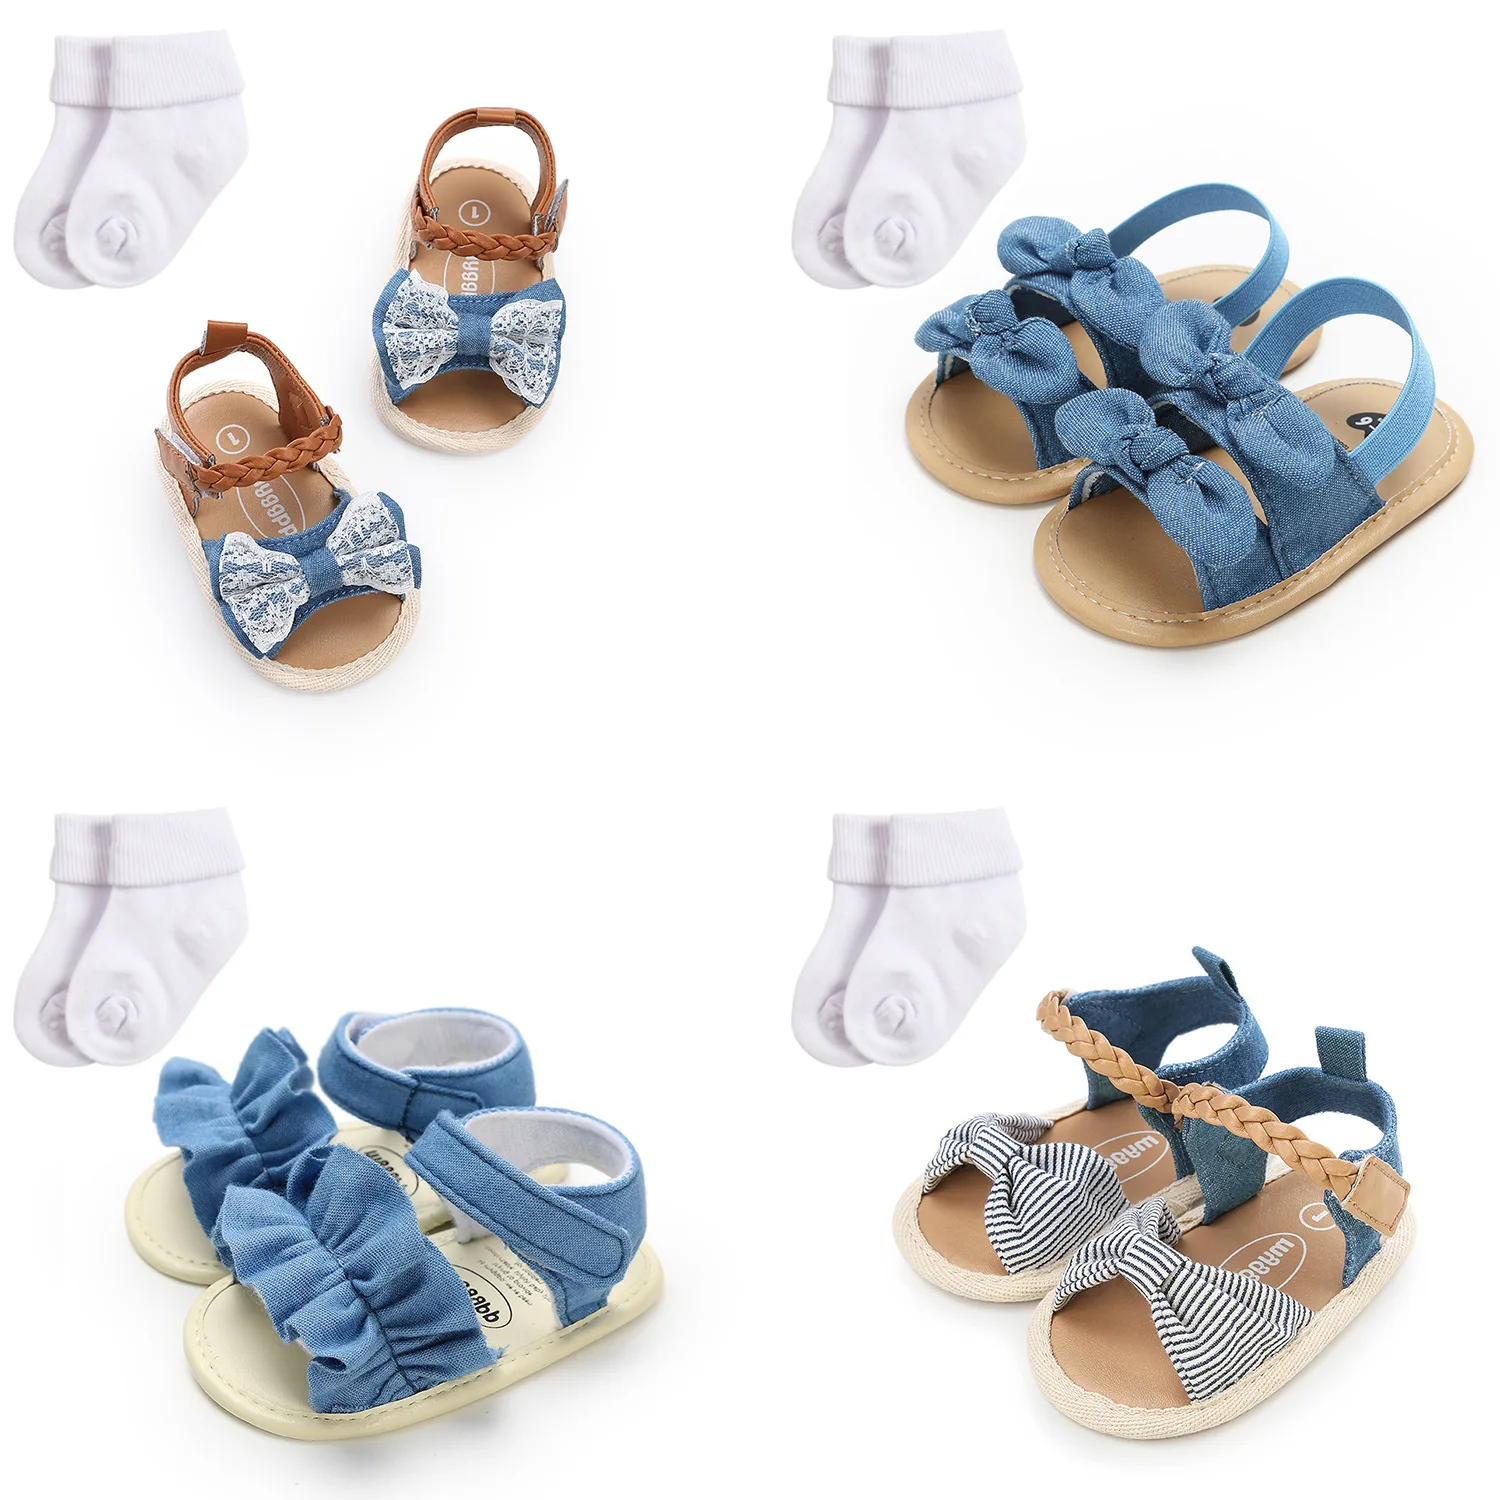 Sandalias De Bebé Y Para Niña,Zapatos De 1 Año Para Niños Niñas - Buy Bebé Y Sandalias,Bebé Niña Sandalias,Los Niños Sandalias Product Alibaba.com